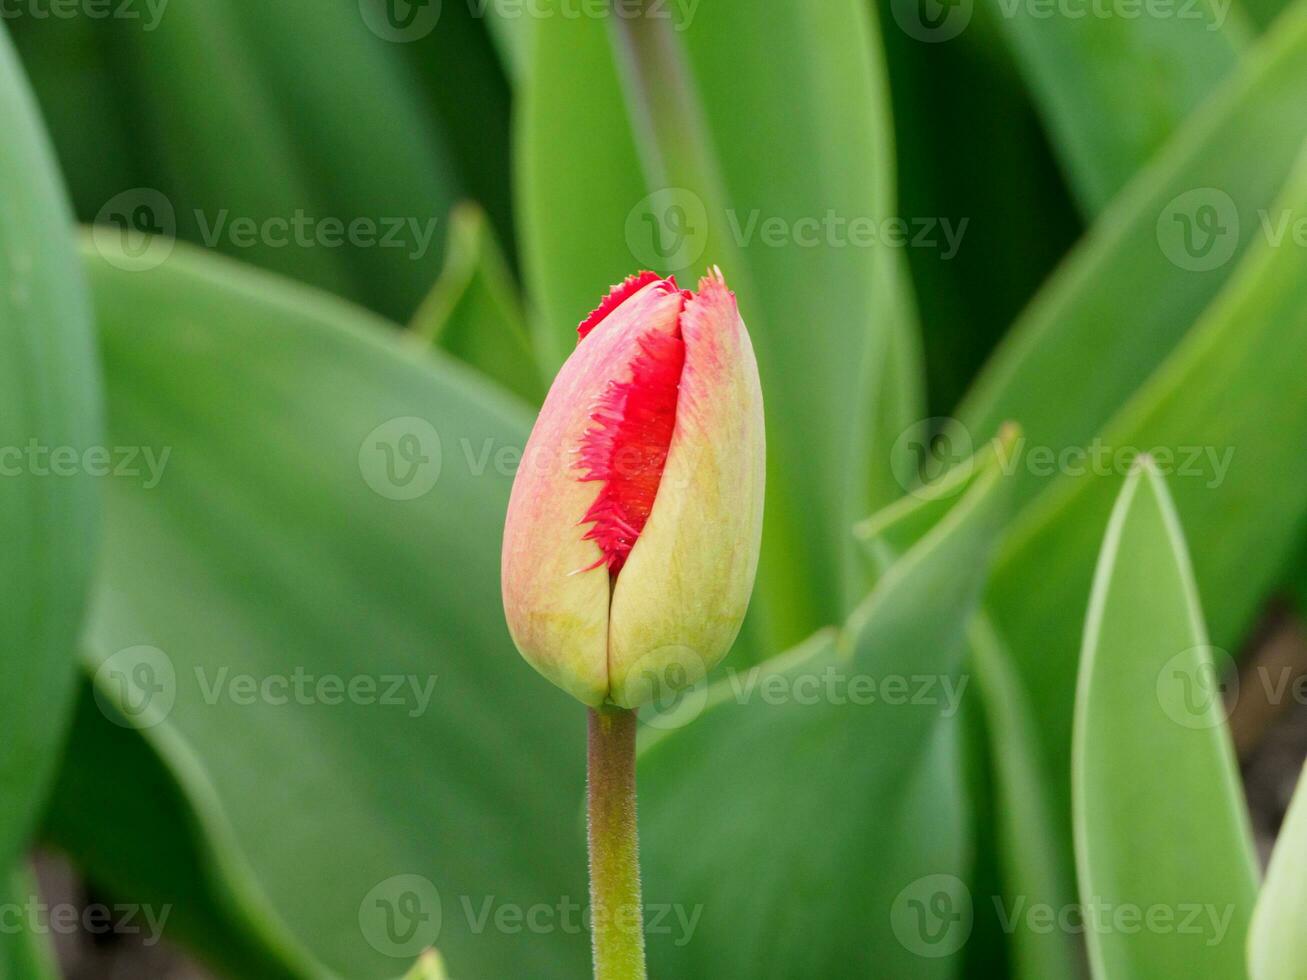 tulipes, dans le Pays-Bas photo